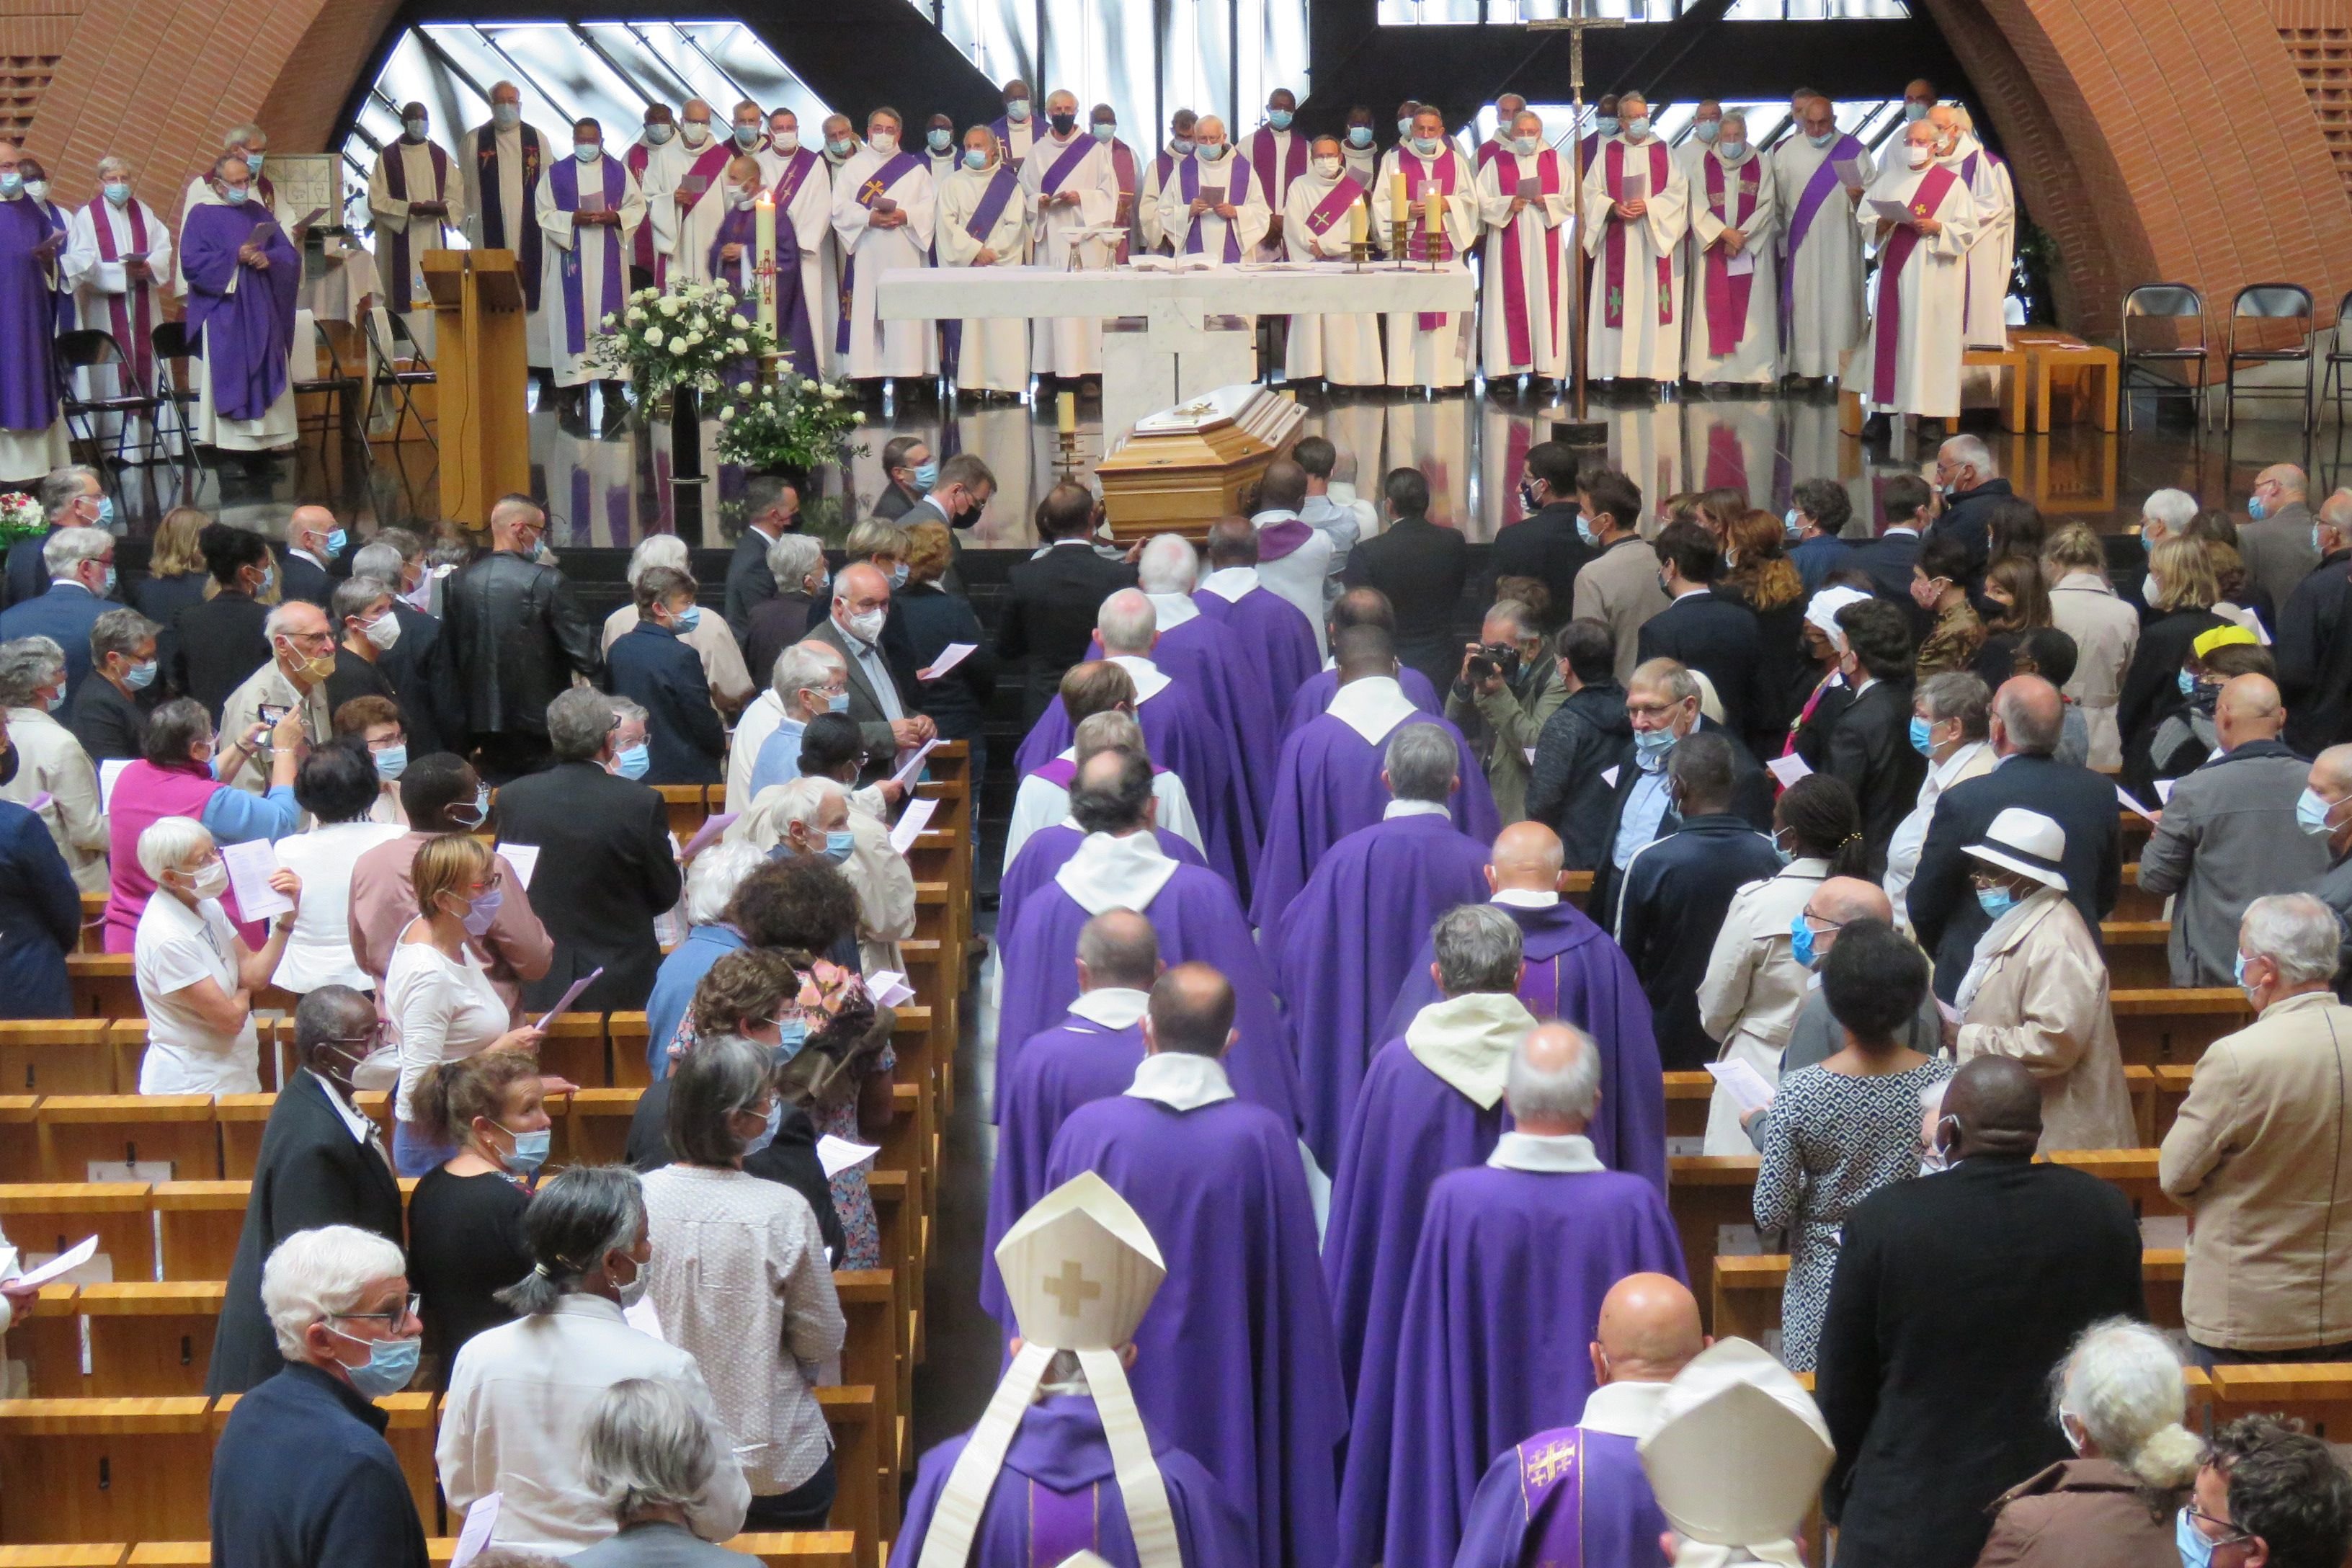 Evry-Courcouronnes, vendredi 6 août 2021. Vêtus d'étoles violettes, symboles de deuil, les prêtres suivent le cercueil dans la cathédrale de la Résurrection d'Evry. LP/Nolwenn Cosson